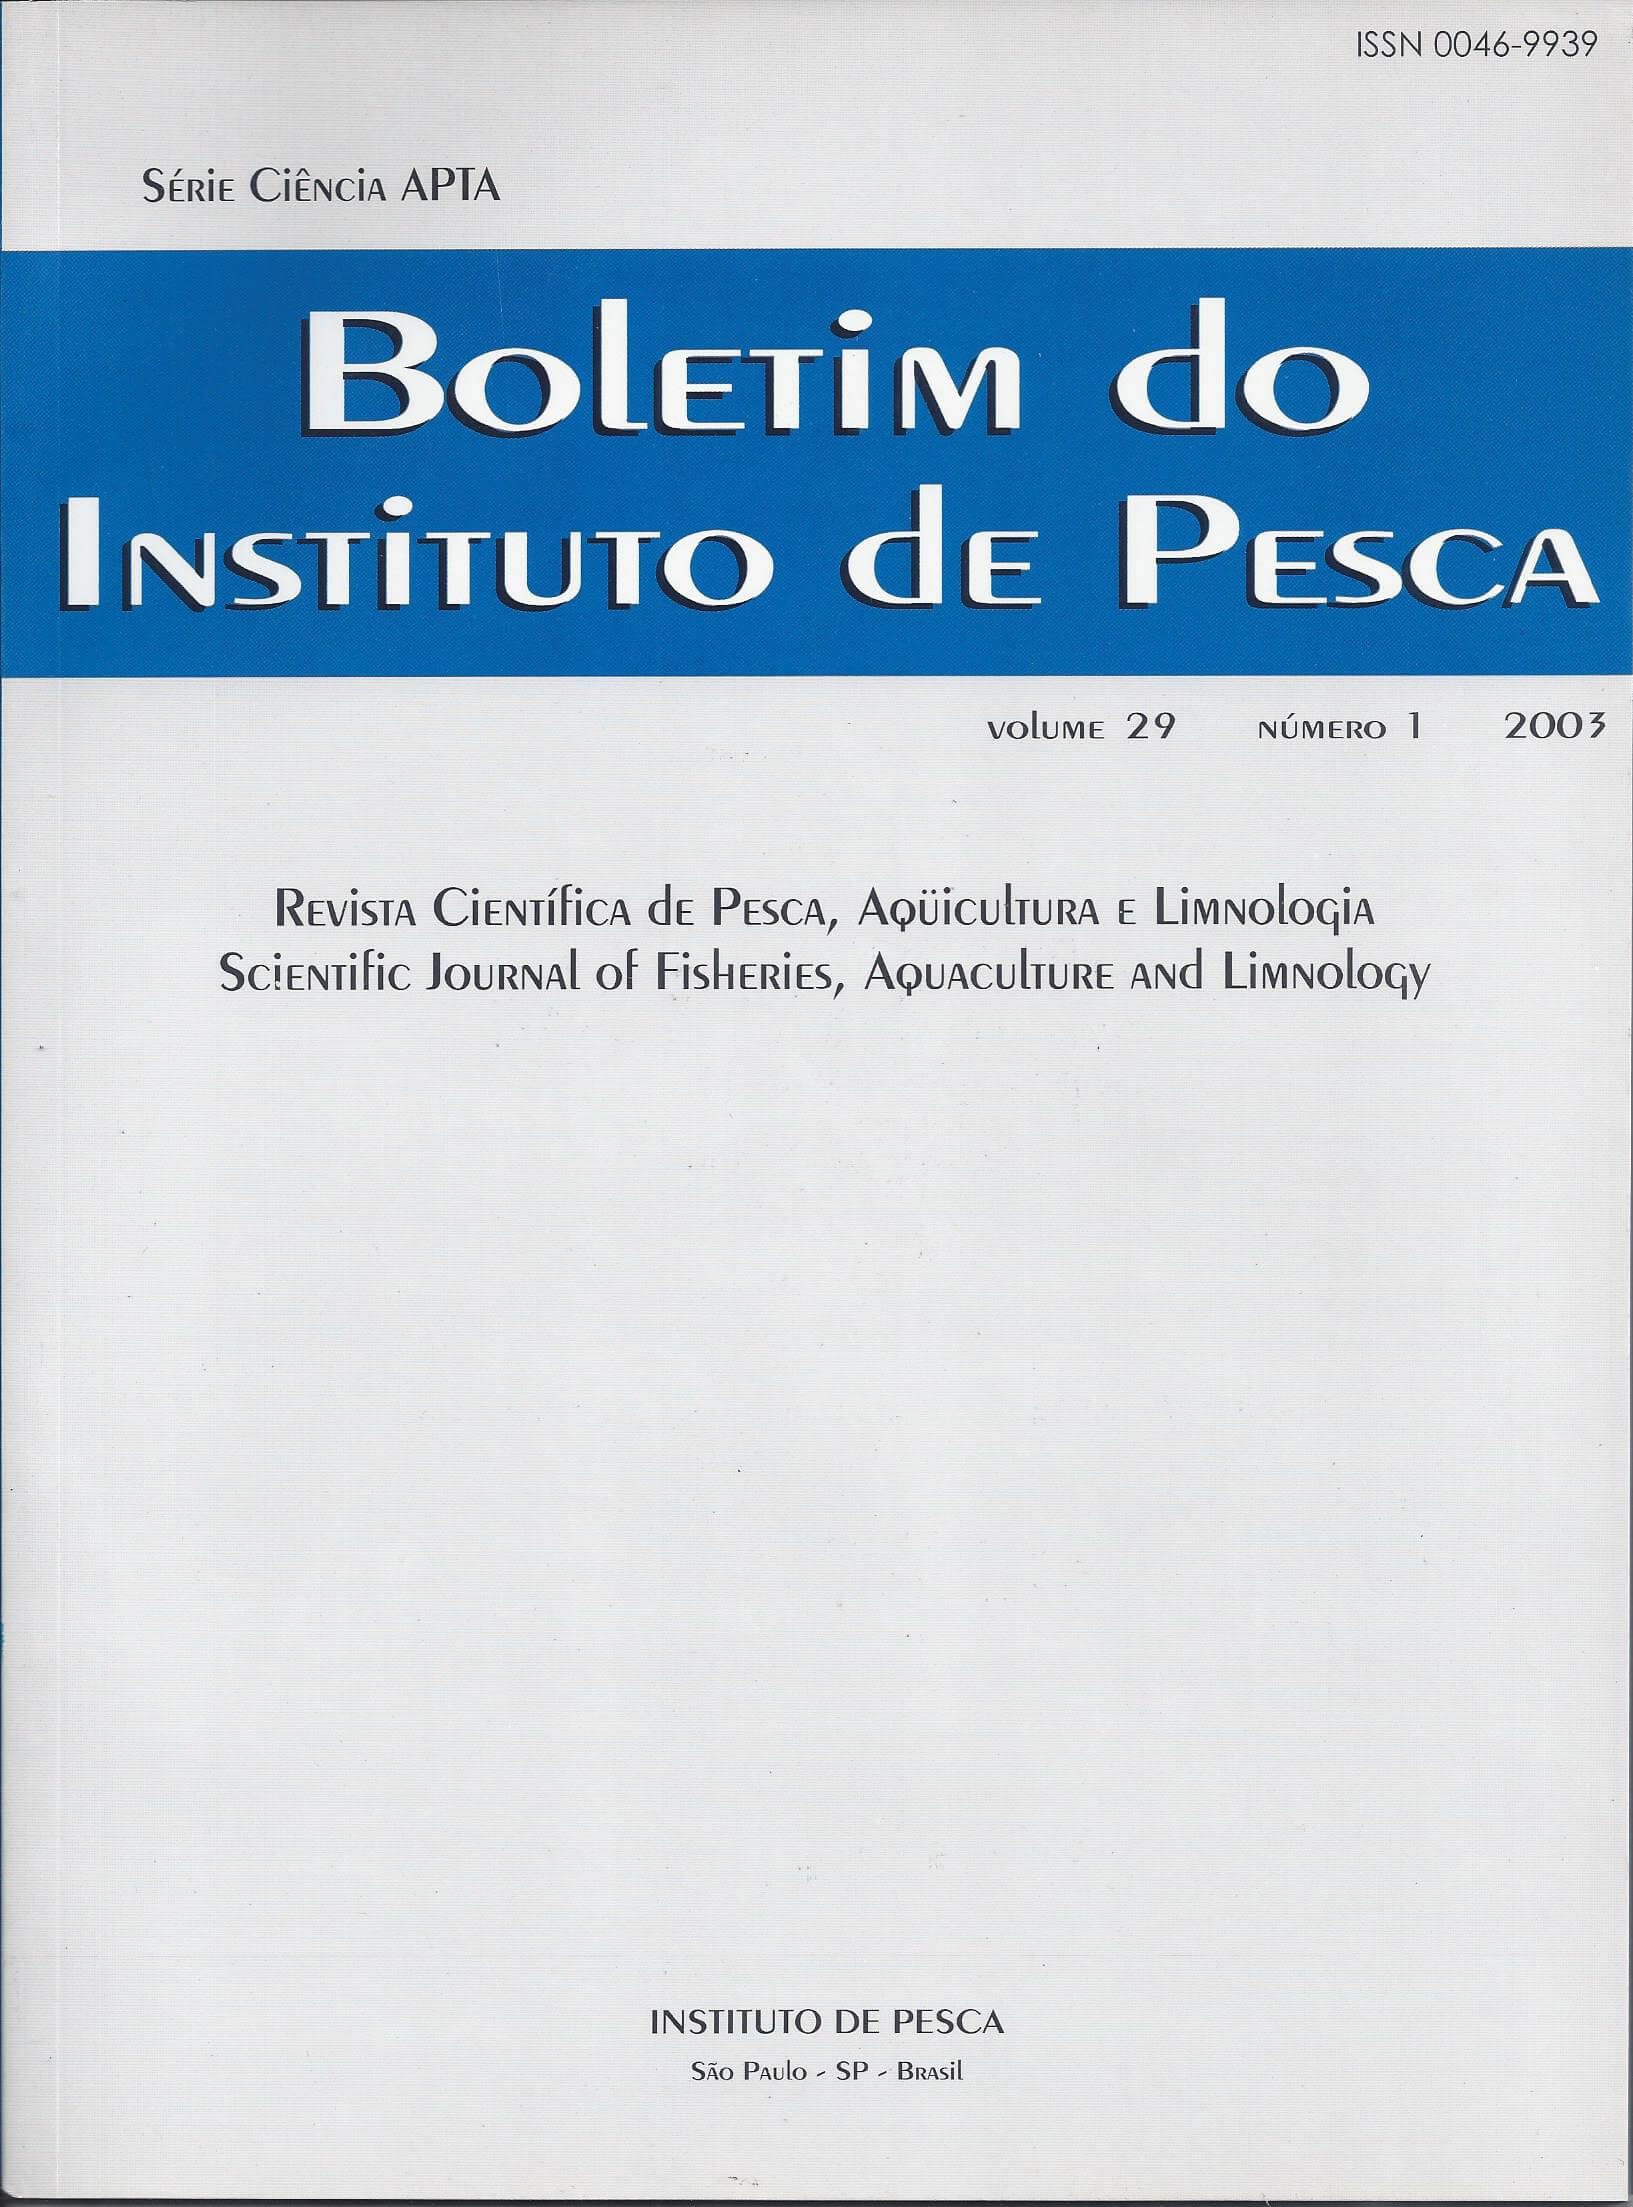 					Visualizar v. 29 n. 1 (2003): BOLETIM DO INSTITUTO DE PESCA
				